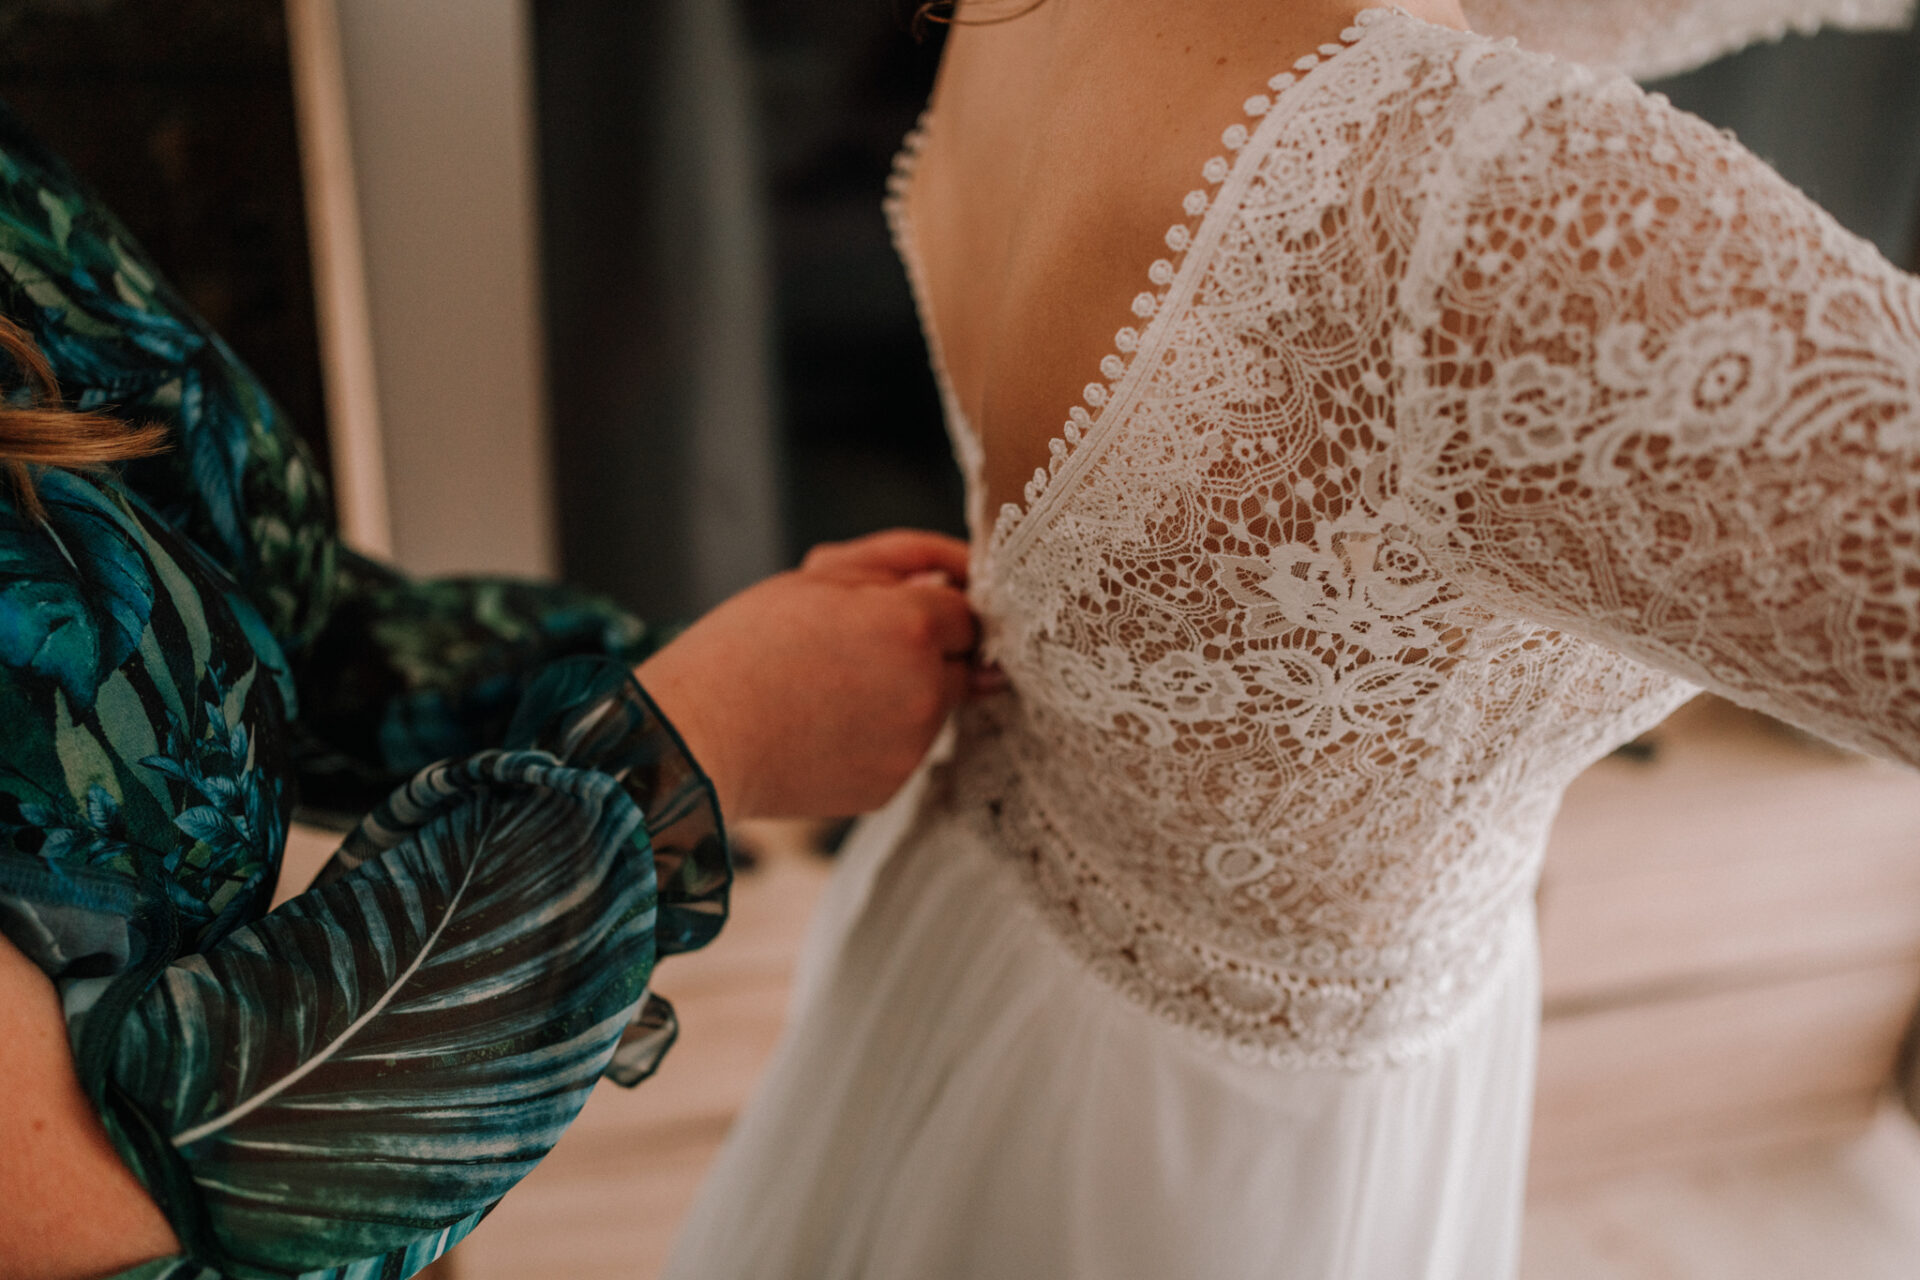 suknia ślubna